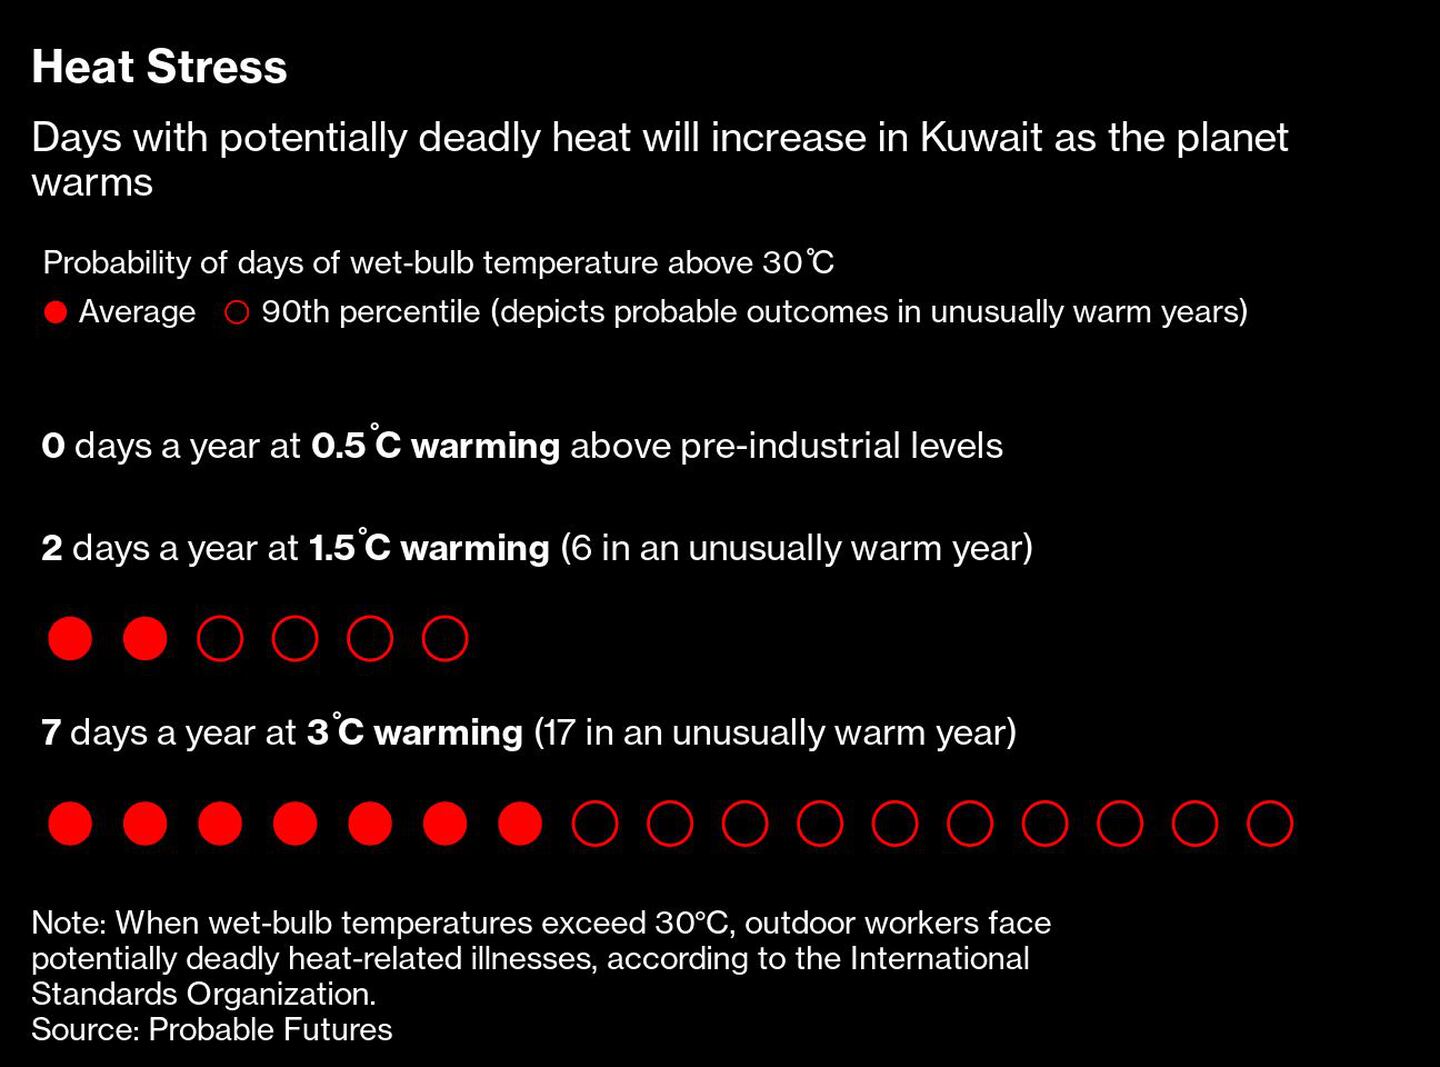 Estrés por calor
Los días con calor potencialmente mortal aumentarán en Kuwait a medida que el planeta se calienta
Probabilidad de días de temperatura de bulbo húmedo superior a 30°C
Rojo: Media 
Negro: percentil 90 (representa los resultados probables en años inusualmente cálidos)
0 días al año con un calentamiento de 0,5°C por encima de los niveles preindustriales
2 días al año con un calentamiento de 1,5°C (6 en un año inusualmente cálido)
7 días al año con un calentamiento de 3°C (17 en un año inusualmente cálido)
Nota: Según la Organización Internacional de Normalización, cuando las temperaturas del bulbo húmedo superan los 30°C, los trabajadores al aire libre se enfrentan a enfermedades potencialmente mortales relacionadas con el calor.dfd